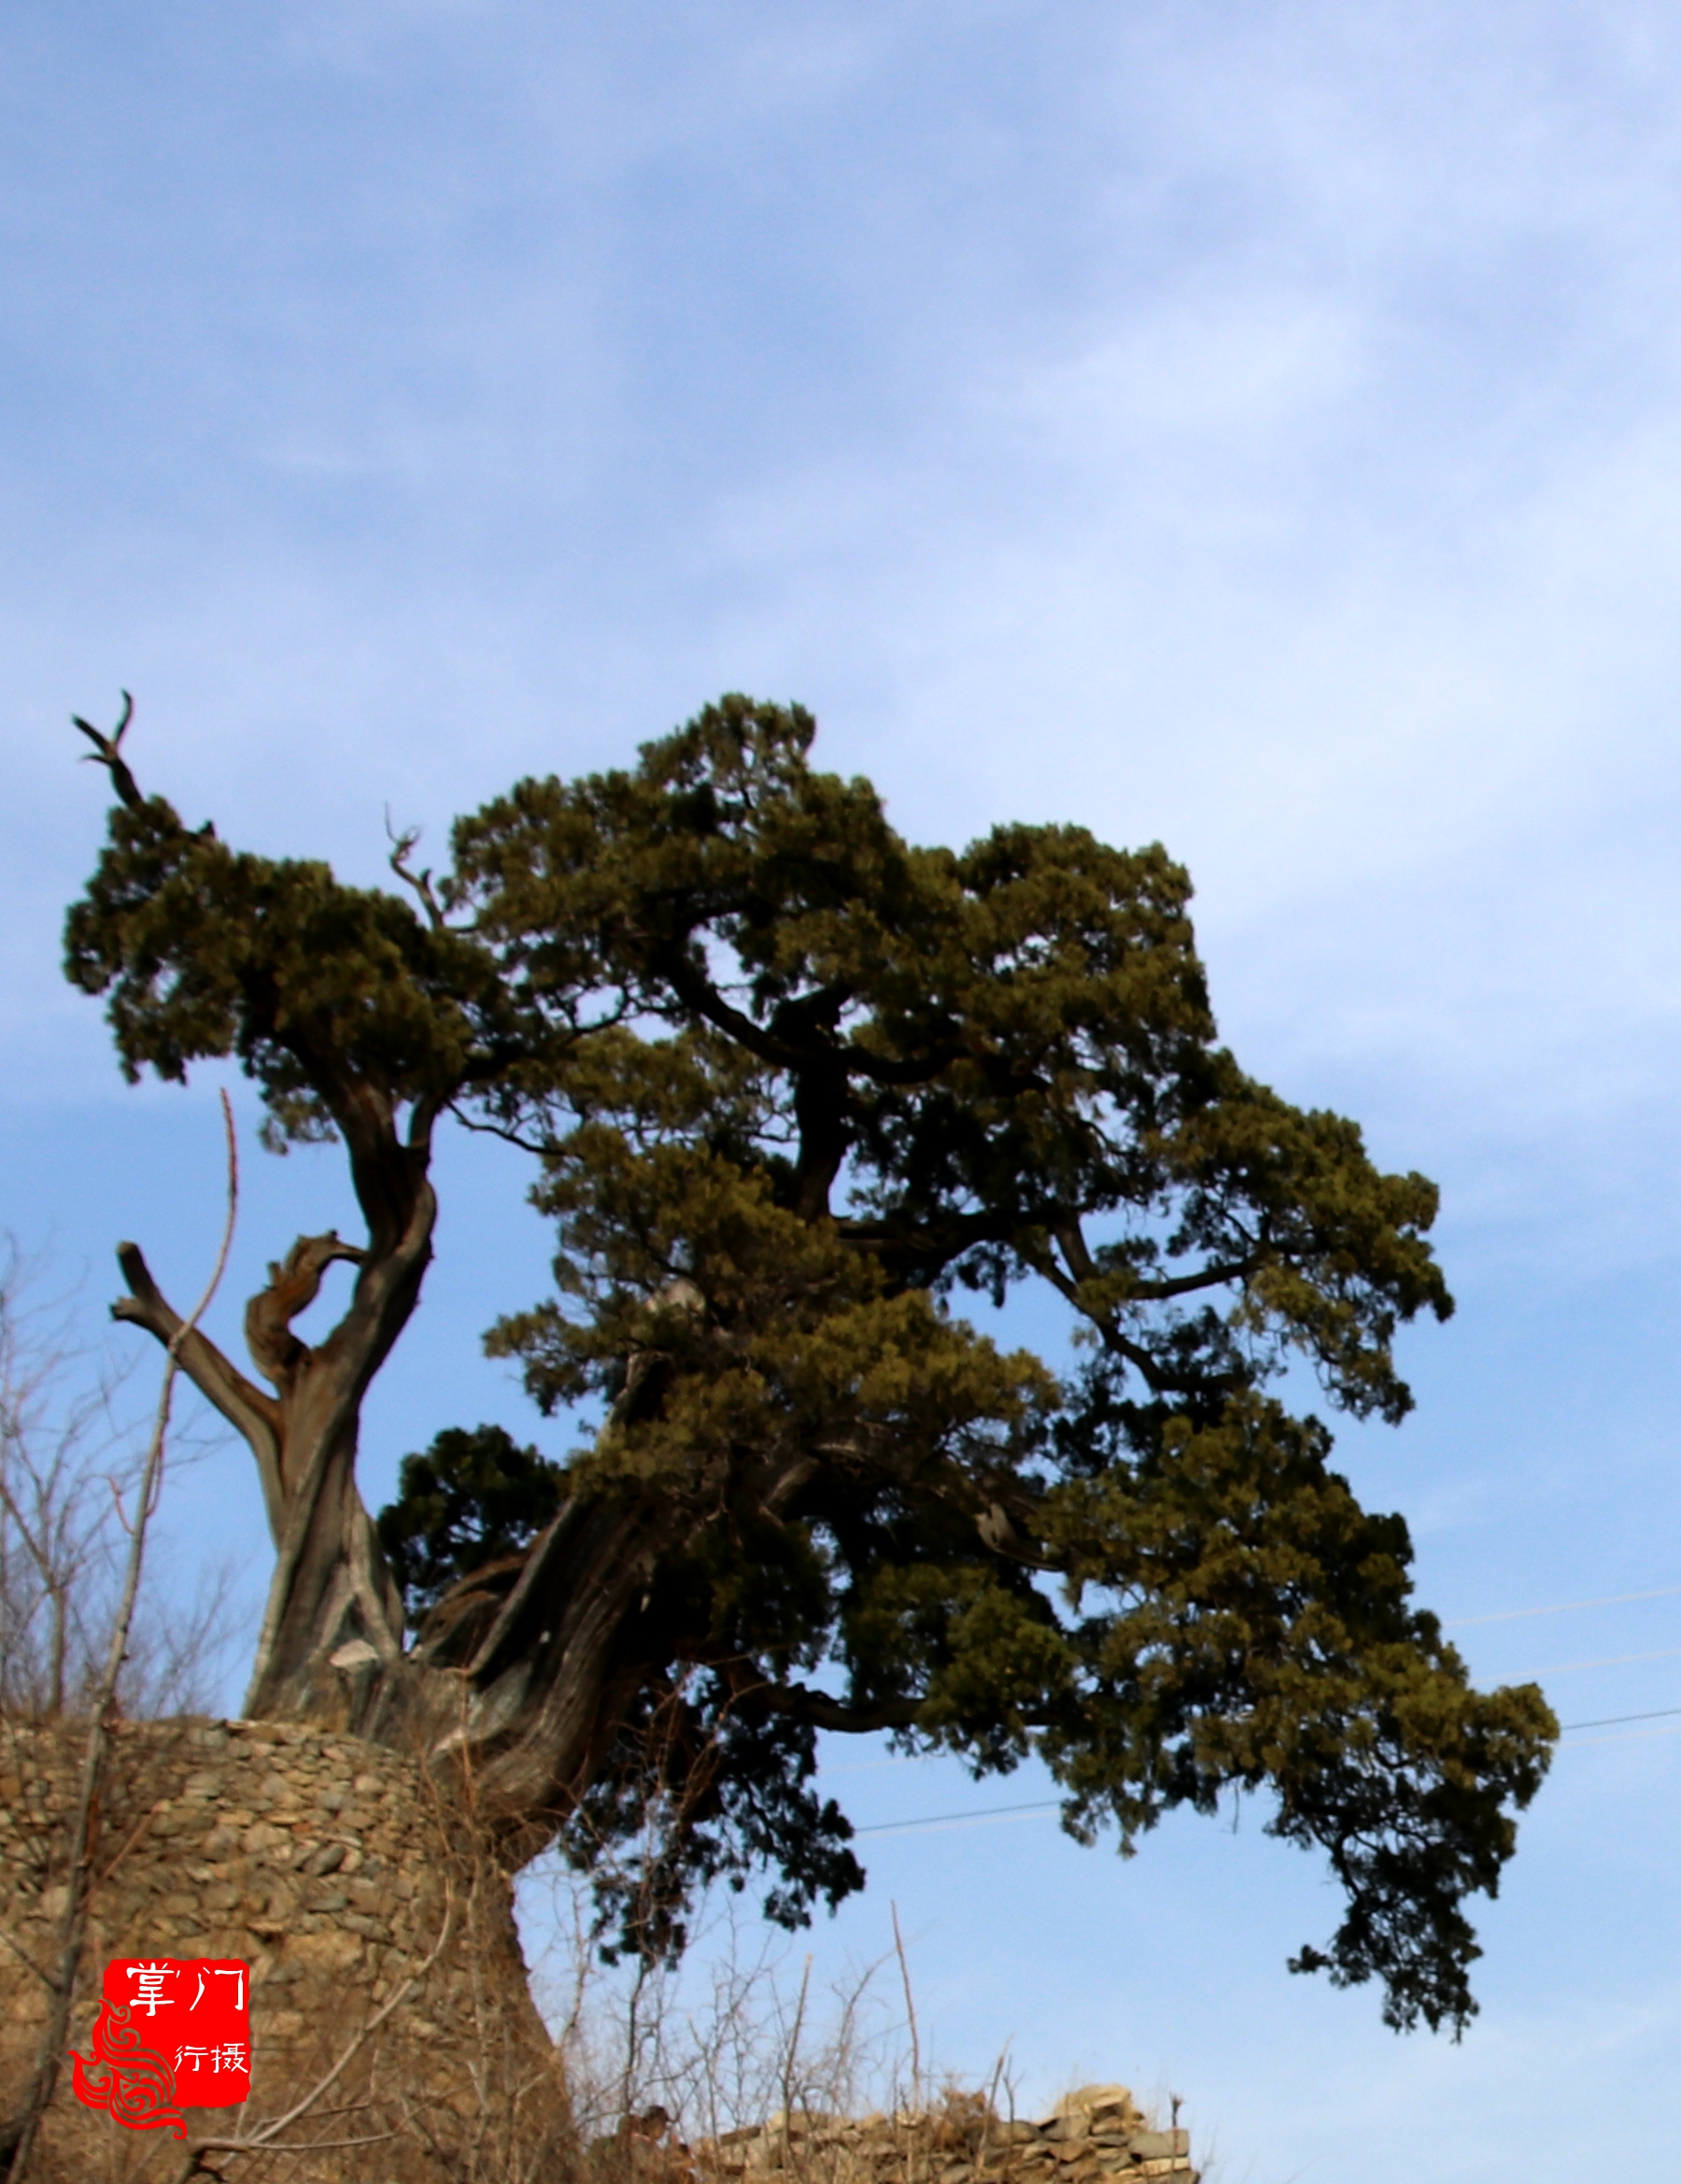 实拍京西古村落的千年灵芝柏,原是西方三圣的看门树